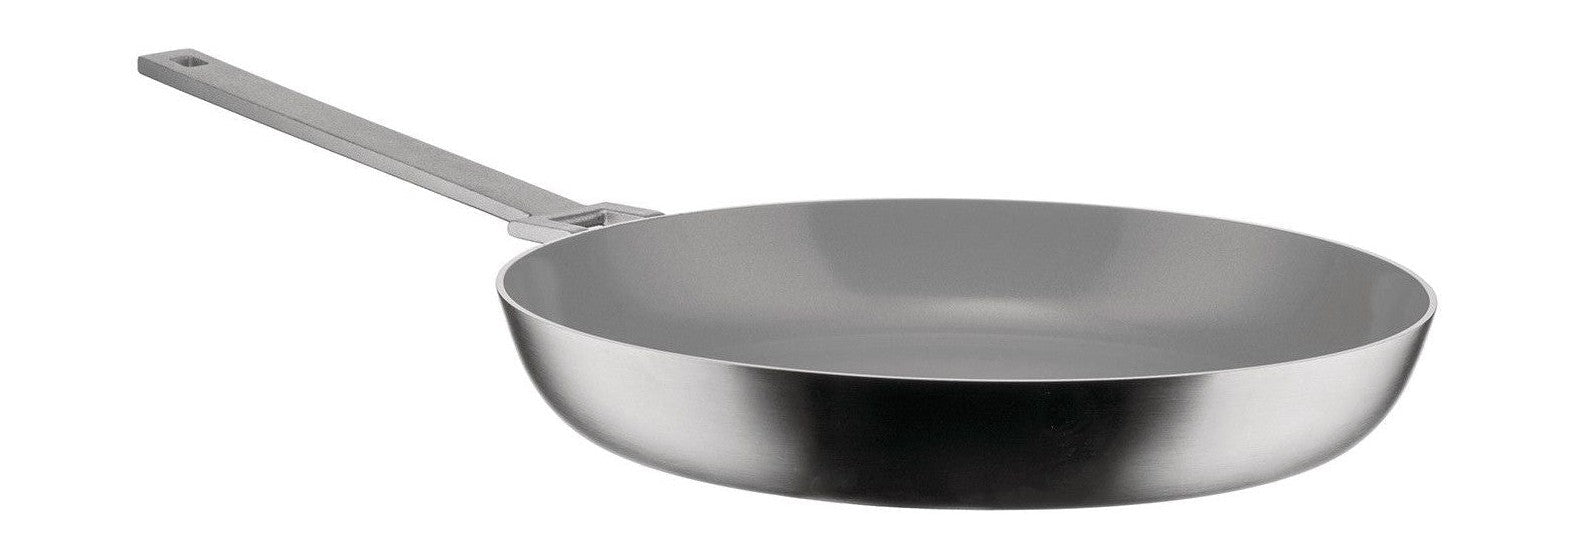 Alessi Convivio Frying Pan con un mango largo, Ø 28 cm